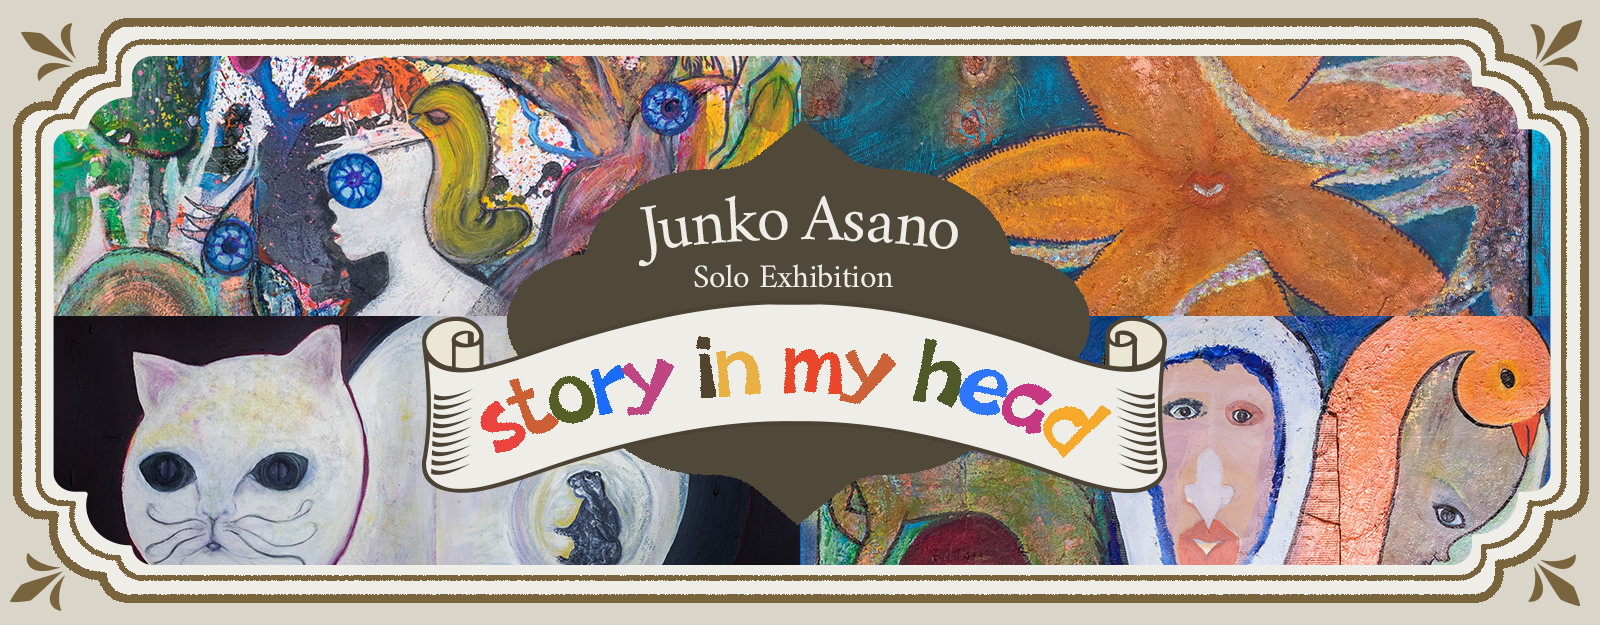 Junko Asano solo exhibition “story in my head” 